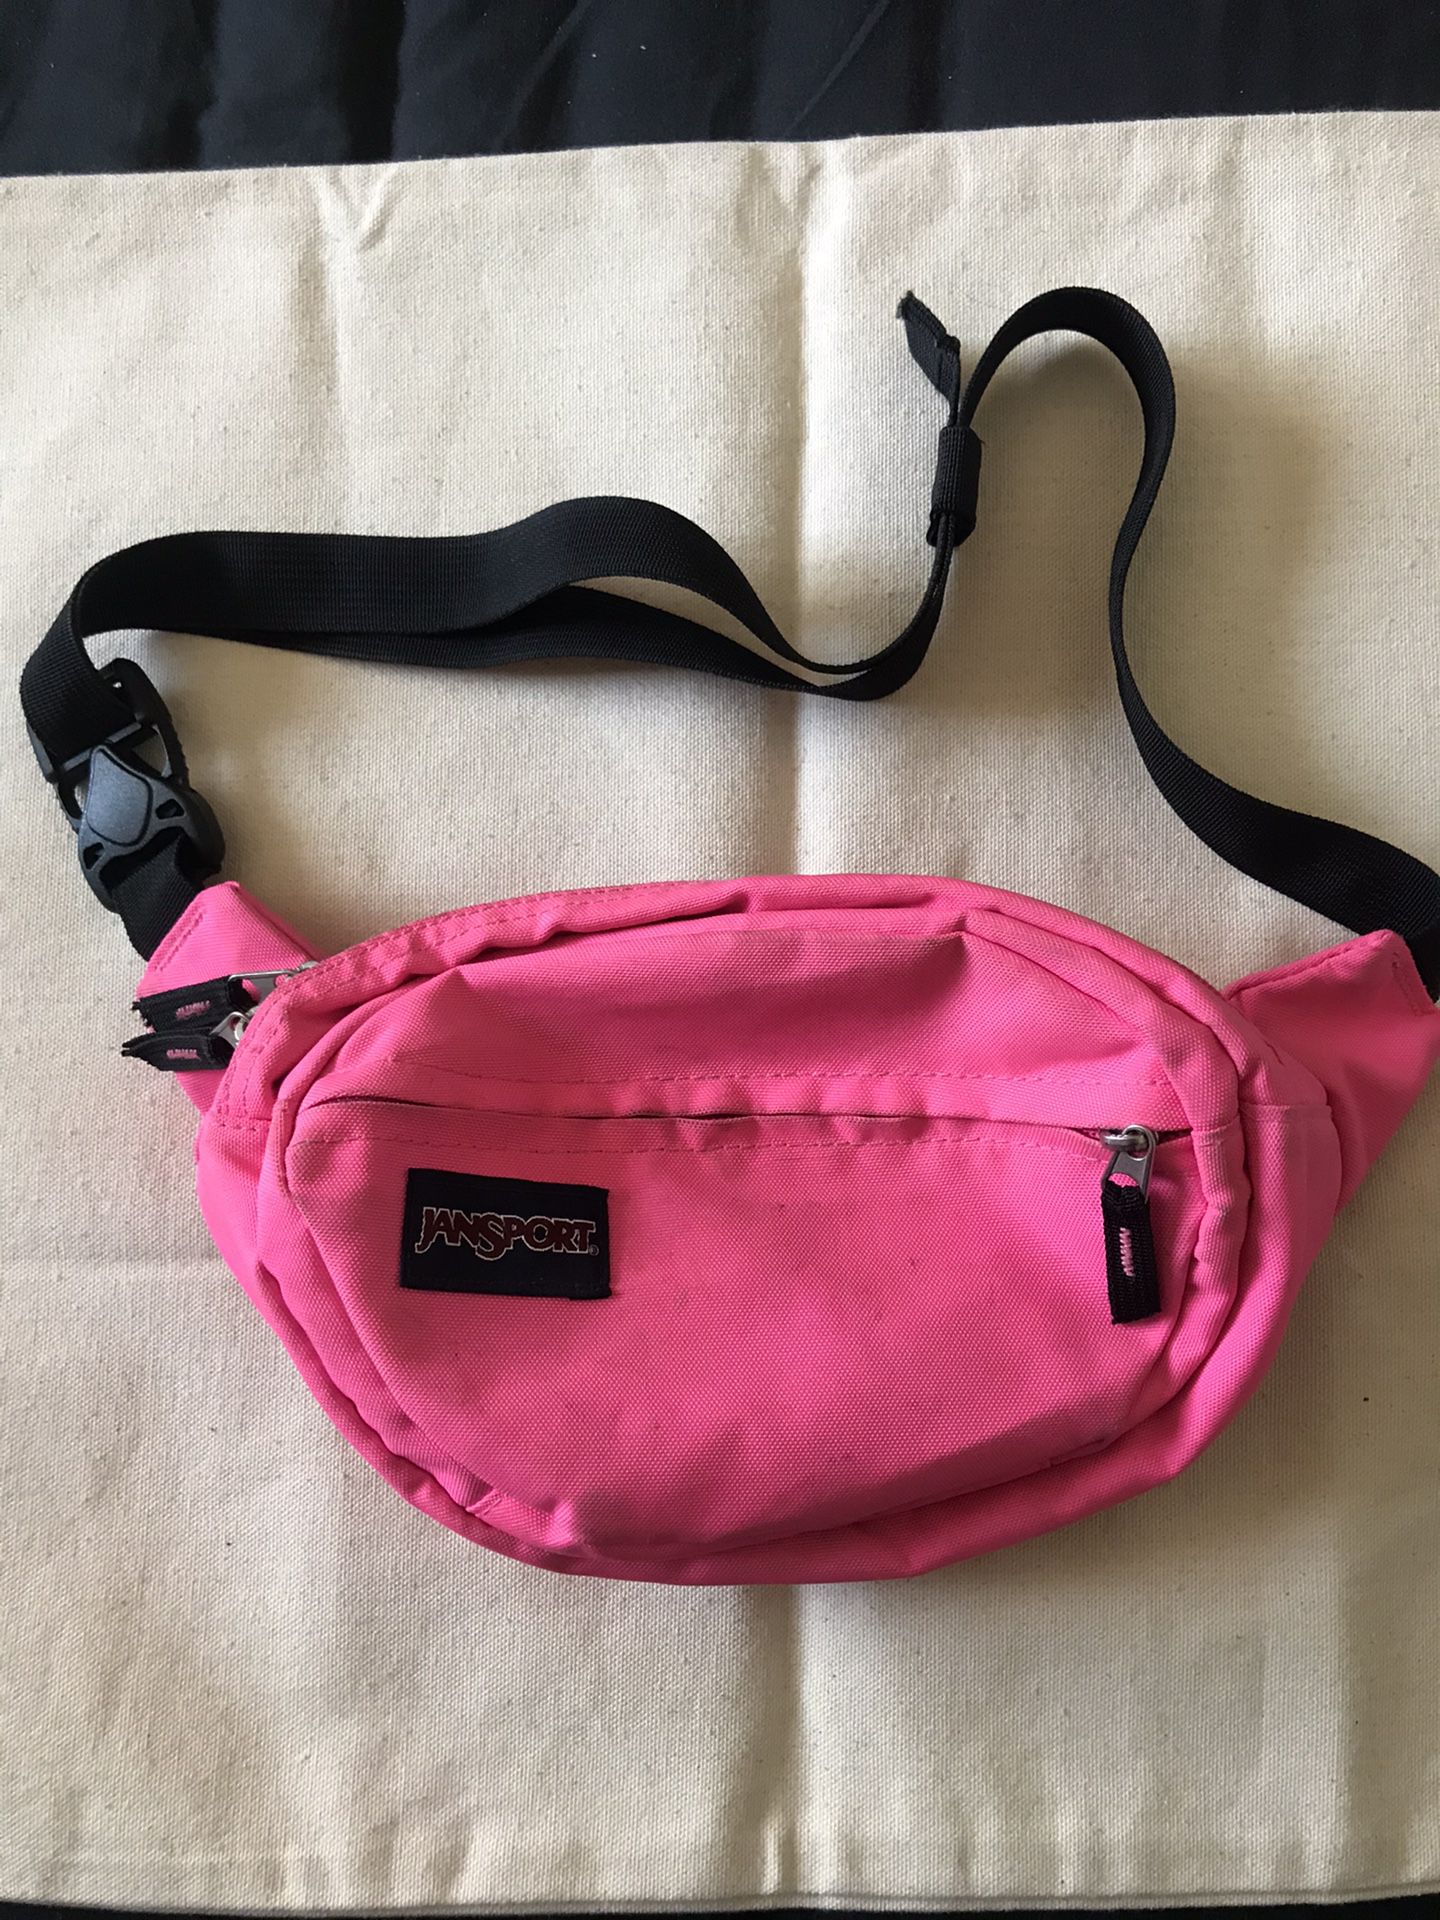 jansport waist bag pink